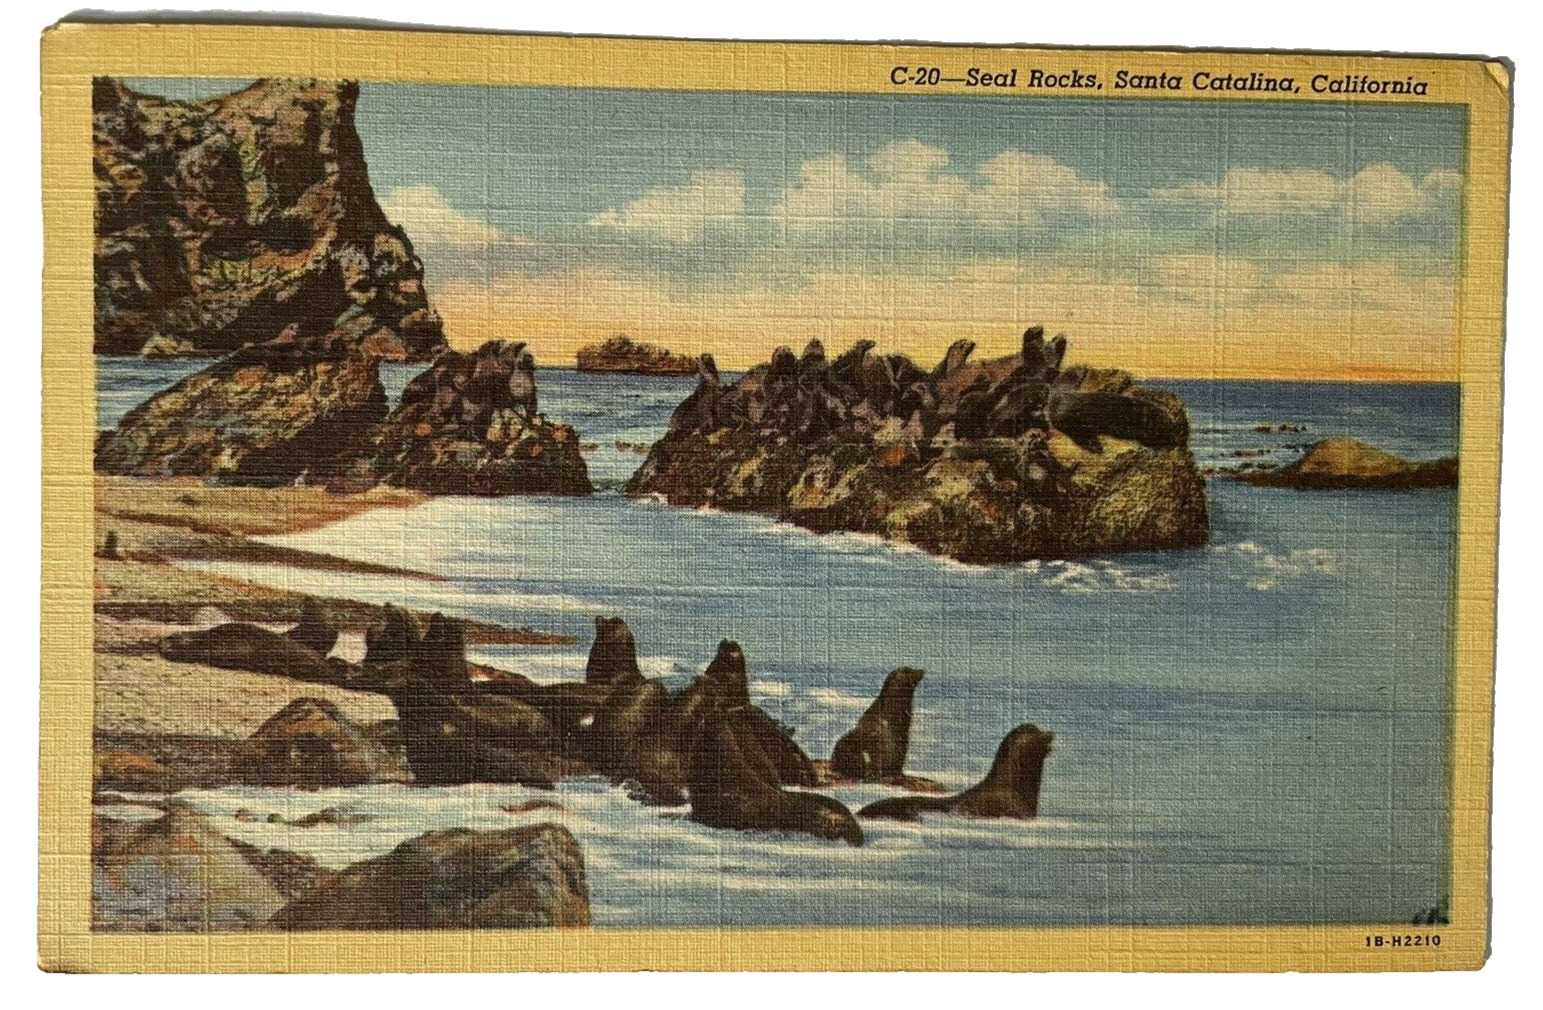 Seal Rocks CA Linen Postcard C-20 C. T. Art Santa Catalina